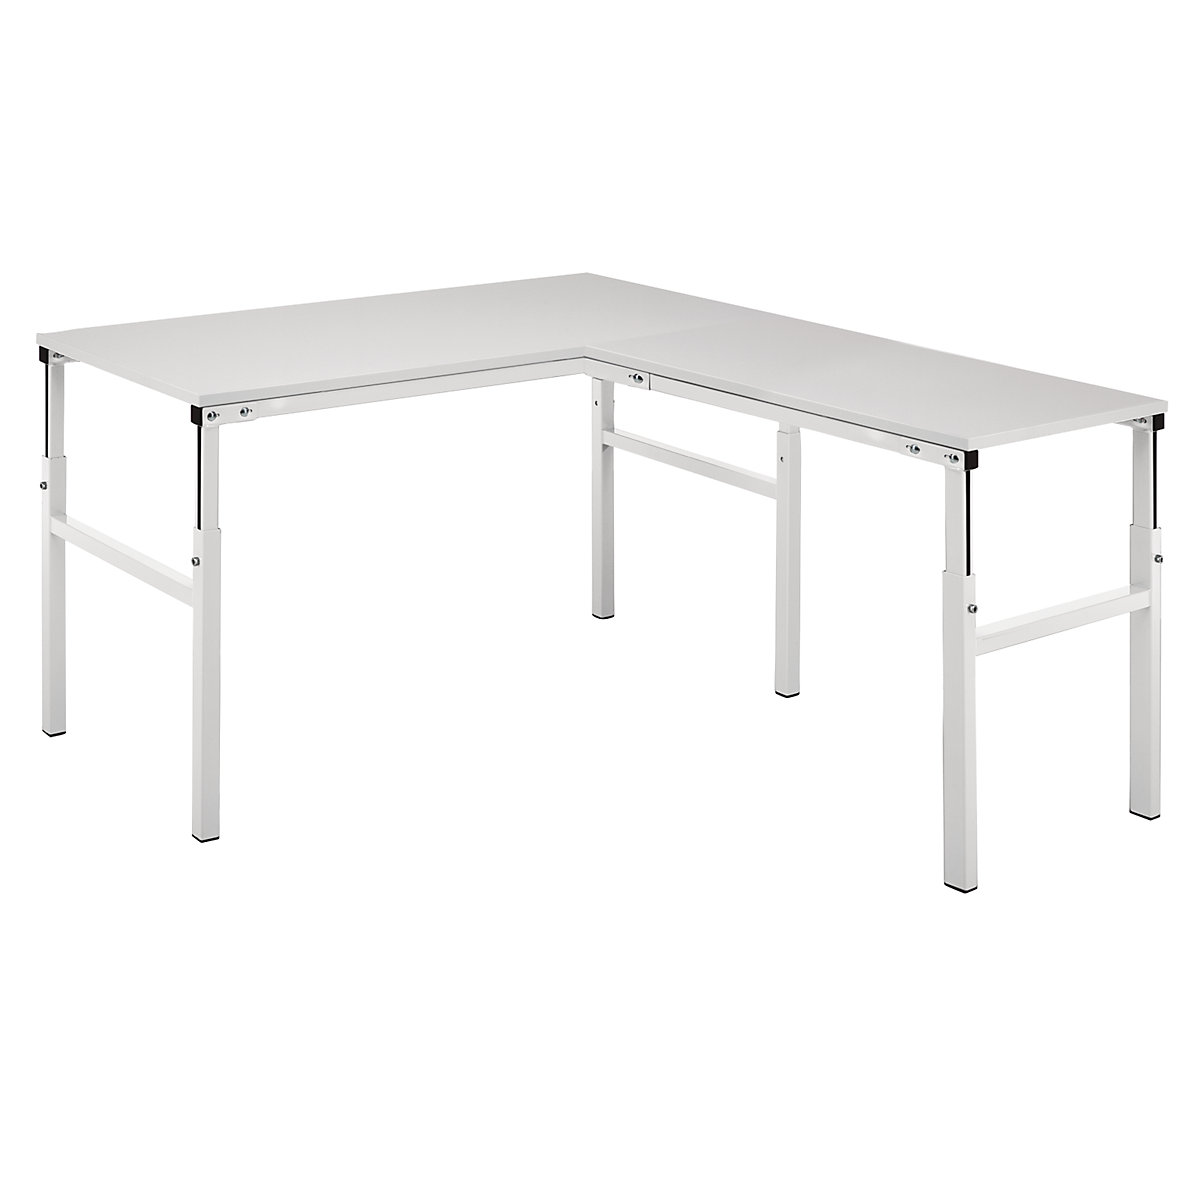 Treston – Pracovní stůl s ručním přestavováním výšky v rozsahu 650 až 900 mm (Obrázek výrobku 2)